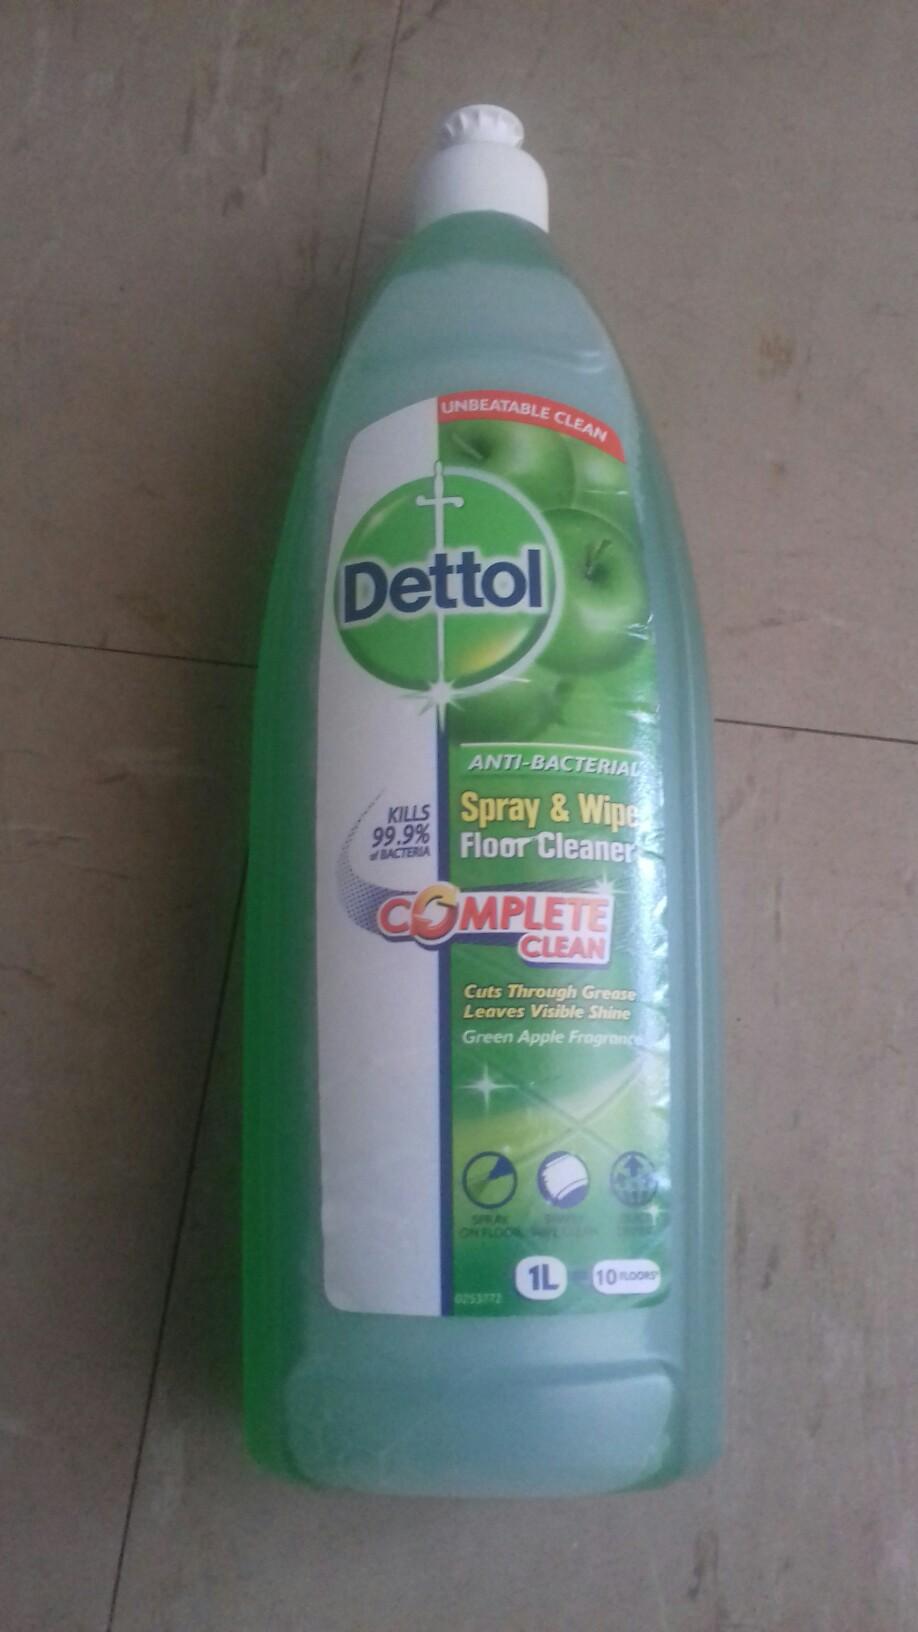 Dettol Spray And Wipe Floor Cleaner In Rg18 Thatcham Fur 0 75 Zum Verkauf Shpock De